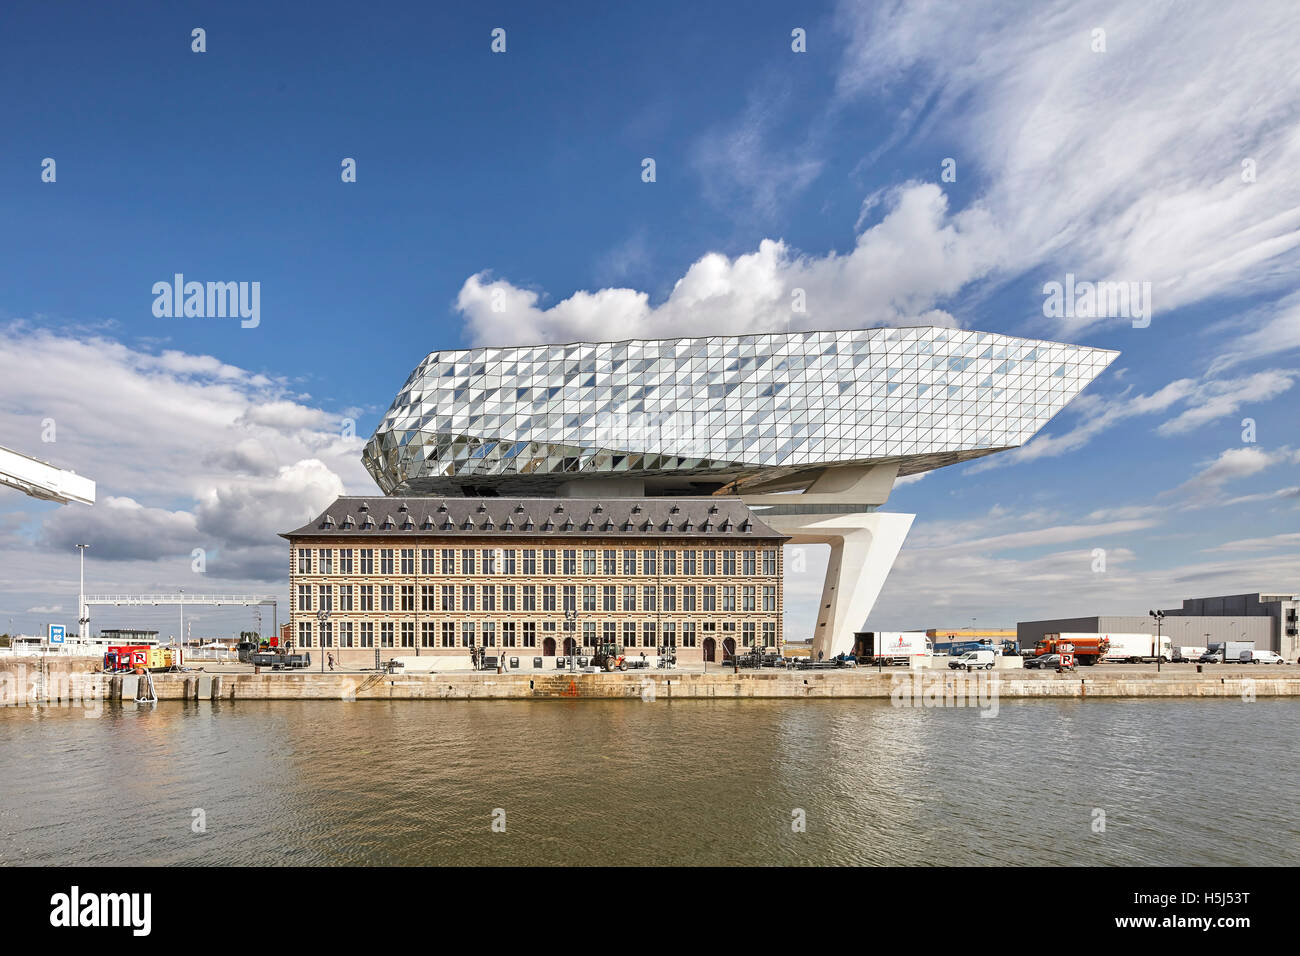 Vue avant de l'ancien et le nouveau voyage waterside. Maison du port, Anvers, Belgique. Architecte : Zaha Hadid Architects, 2016. Banque D'Images